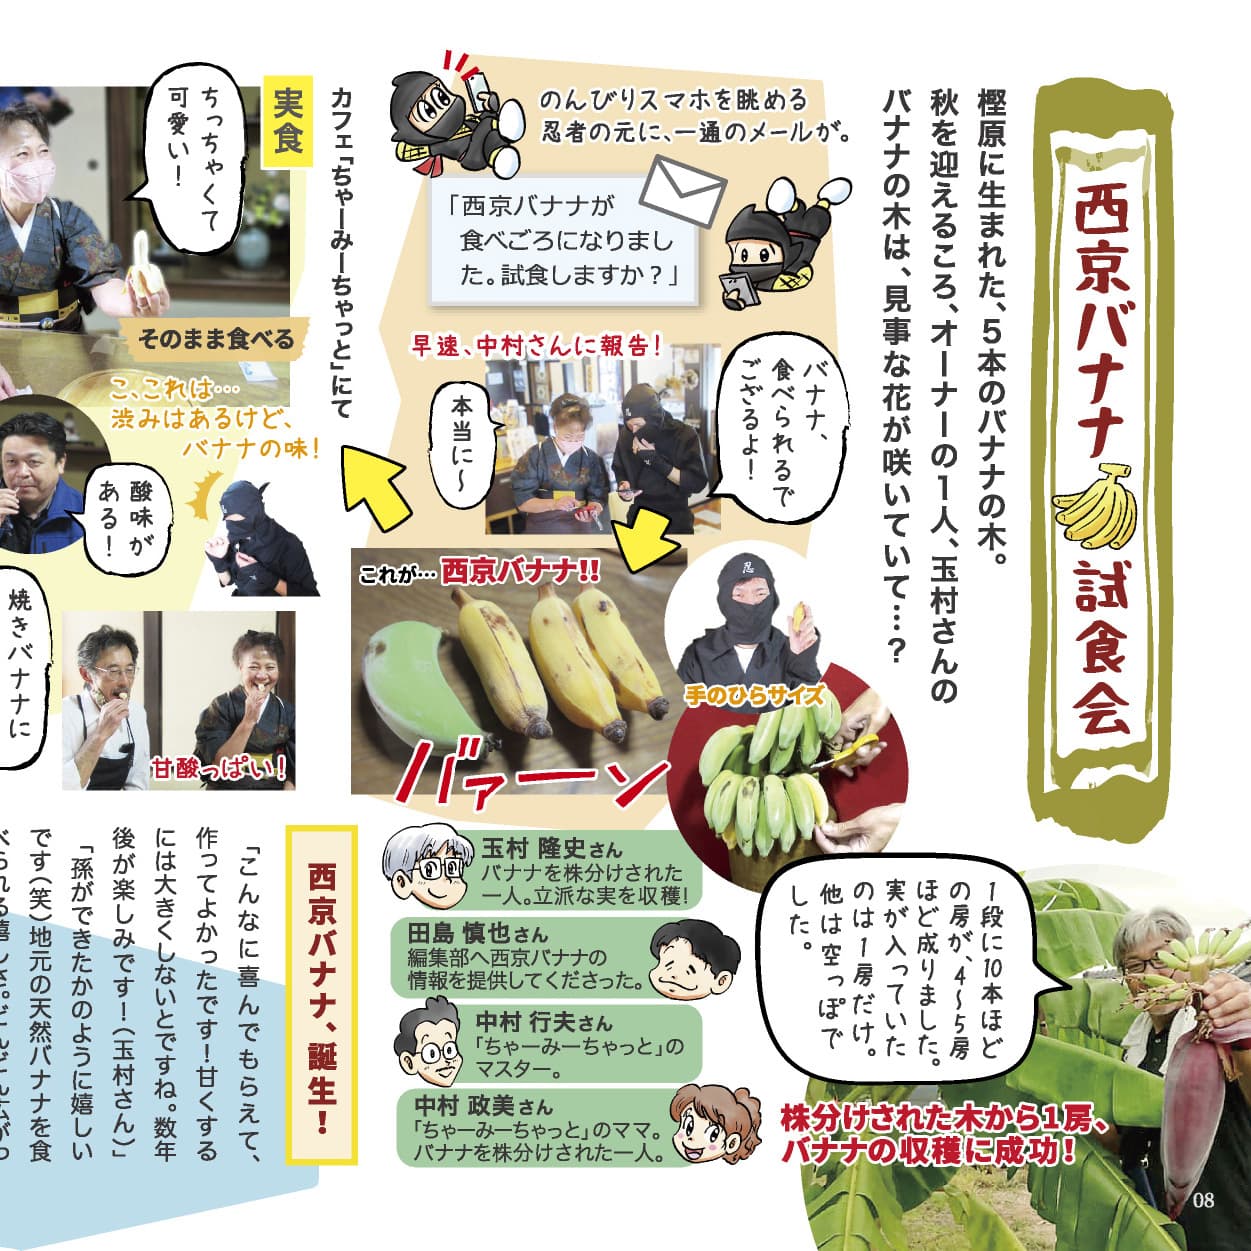 P.8 西京バナナ試食会のイメージ